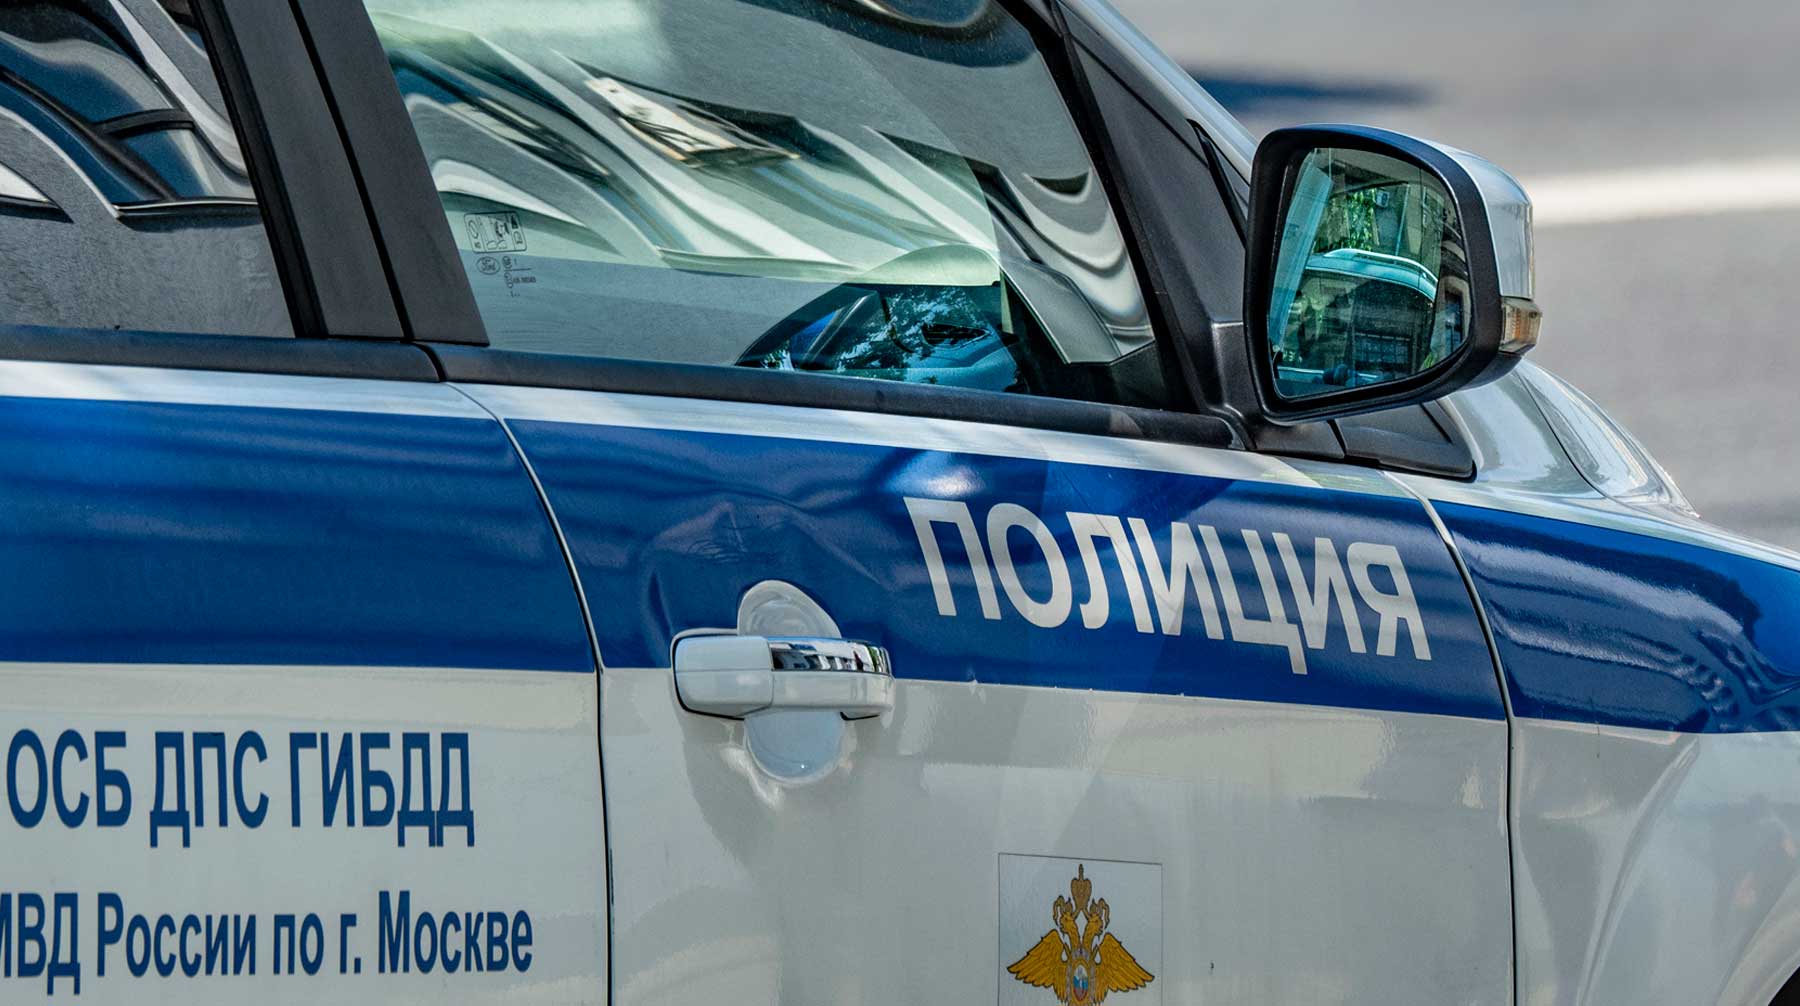 На месте происшествия работают следователи, прокуратура, медики и полиция Фото: © Global Look Press / Konstantin Kokoshkin